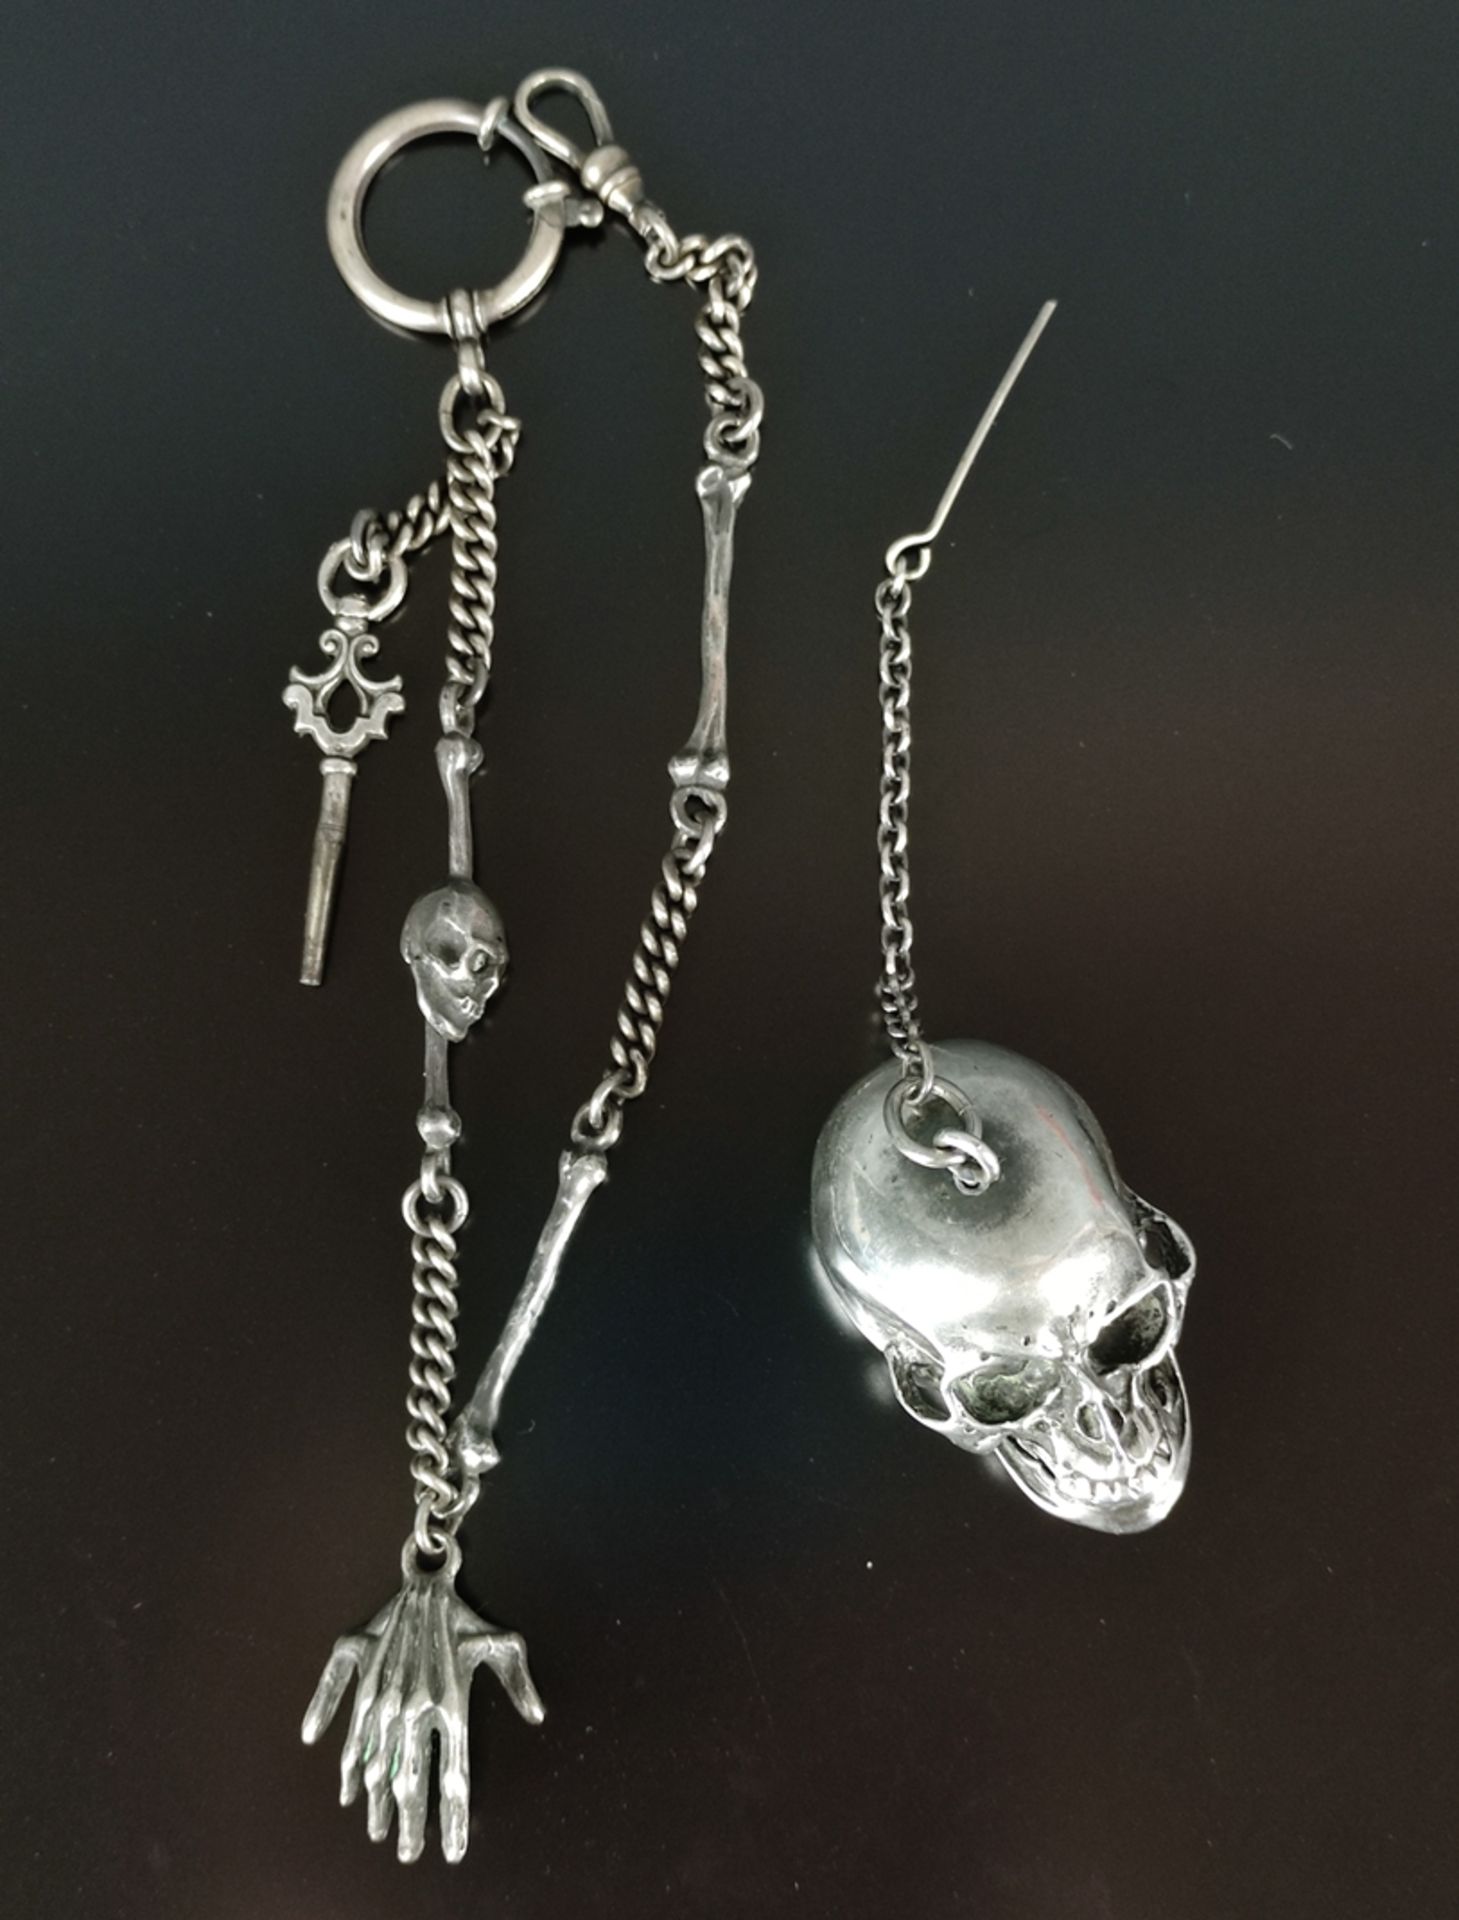 Taschenuhr/Schädeluhr, Craig Compton, in Form eines Schädels, aufklappbar, innen das Uhrwerk, Schäd - Bild 2 aus 7